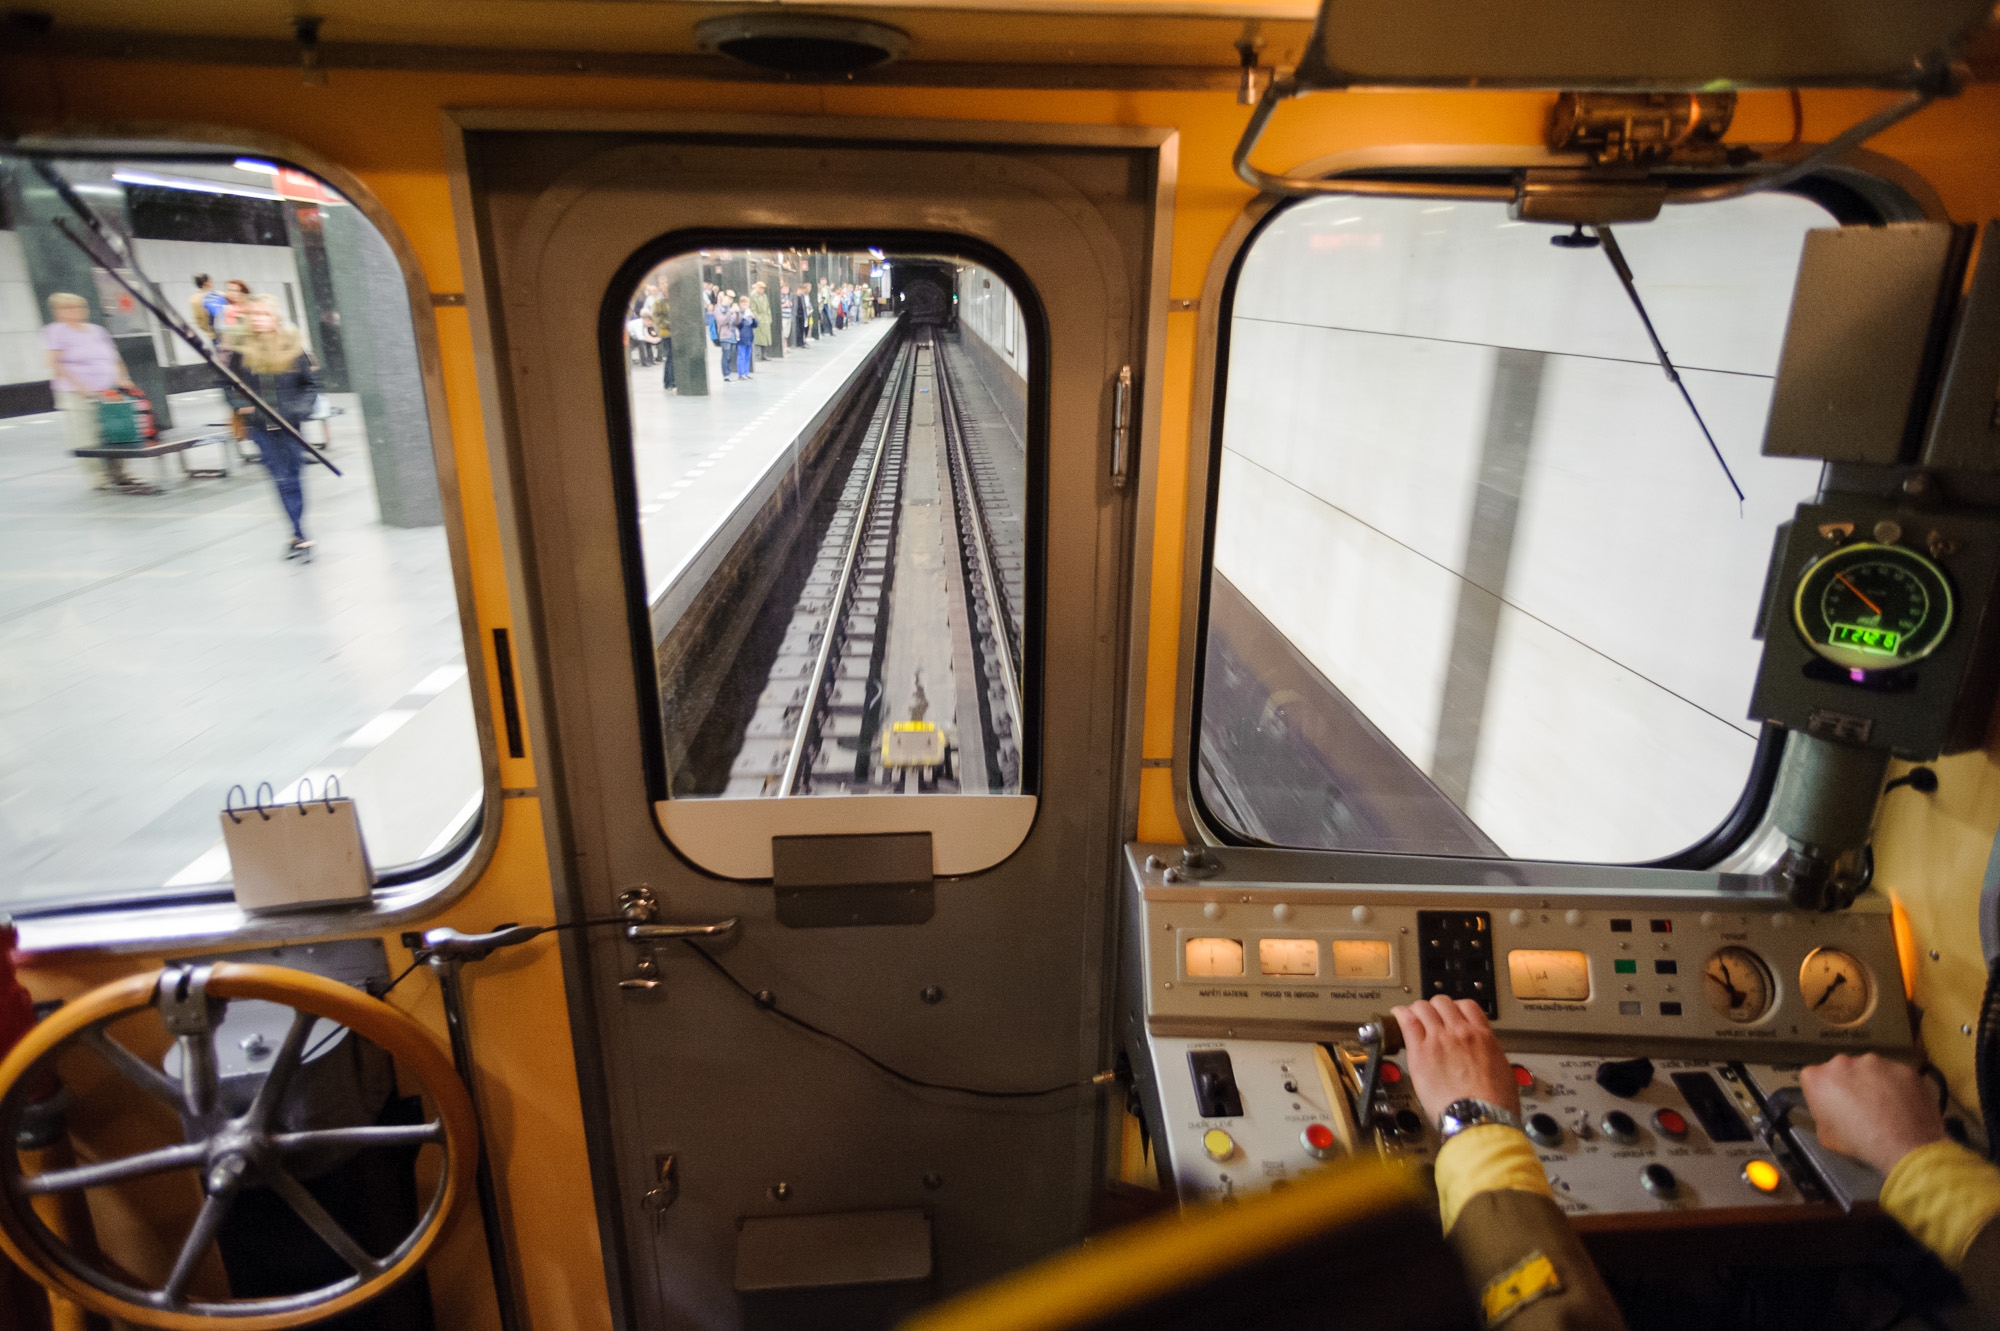 Oslavy 40 let od zahájení provozu pražského metra vyvrcholí Dnem otevřených dveří